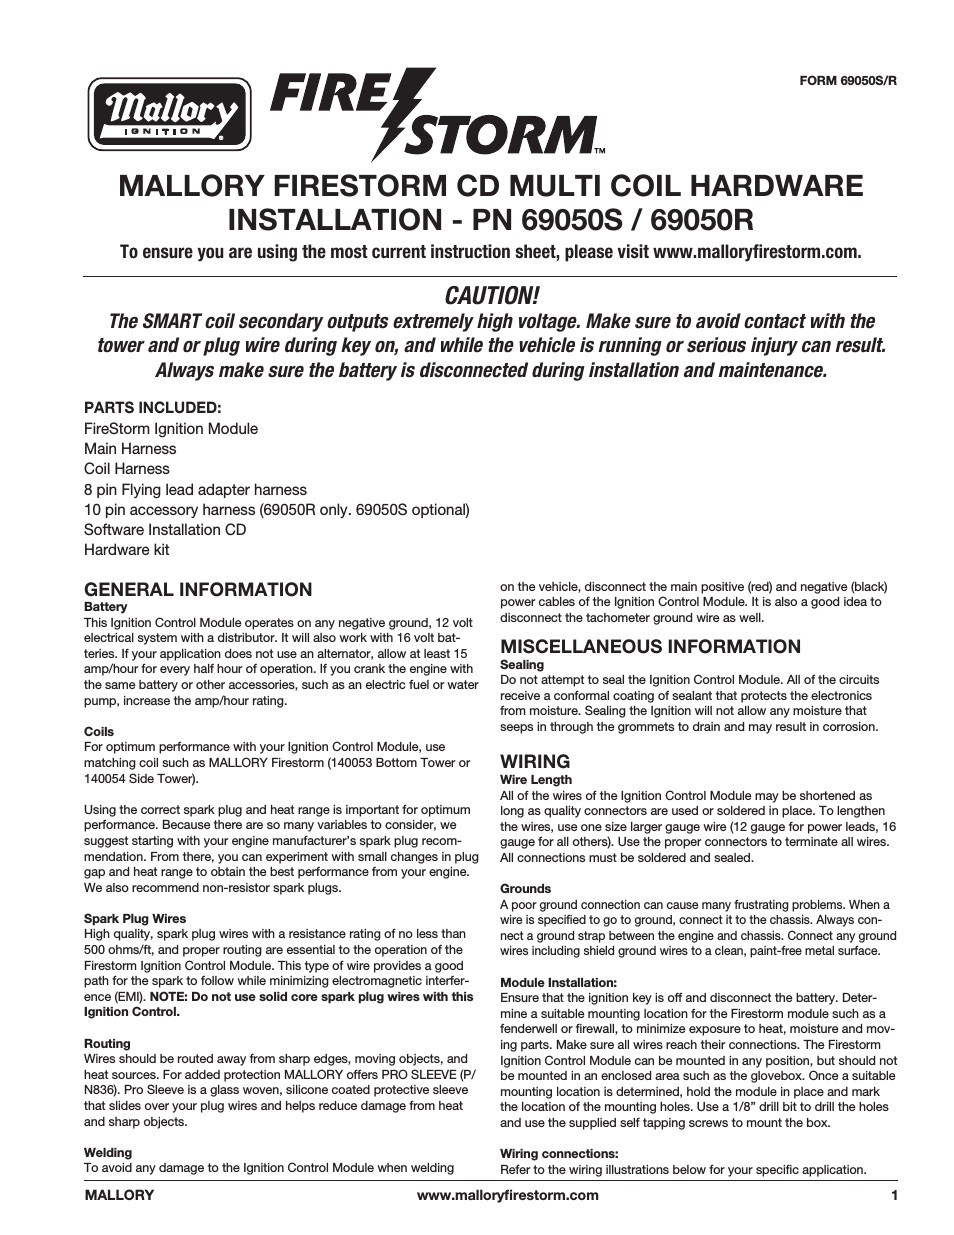 Mallory FIRESTORM CD MULTI COIL HARDWARE 69050S-69050R